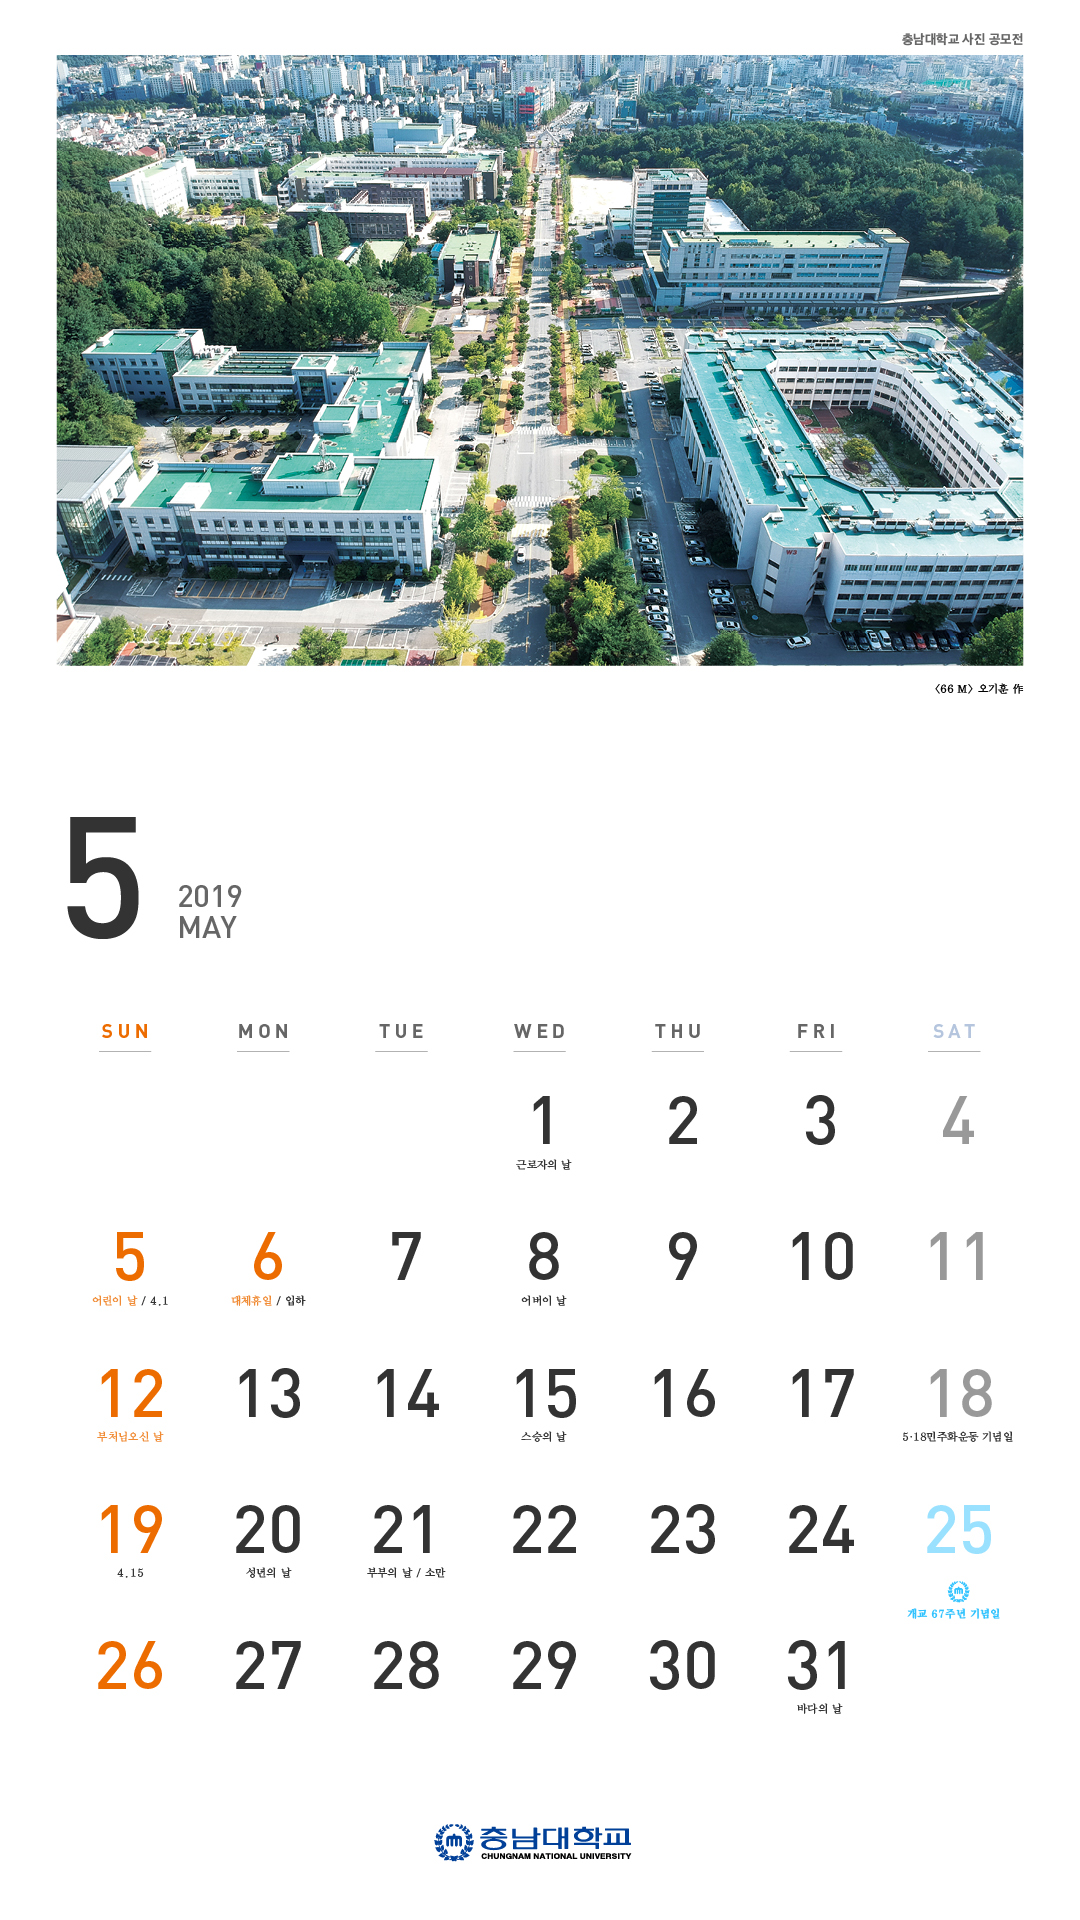 2019년도 > CNU Calendar > 학교상징 > CNU > 충남대학교